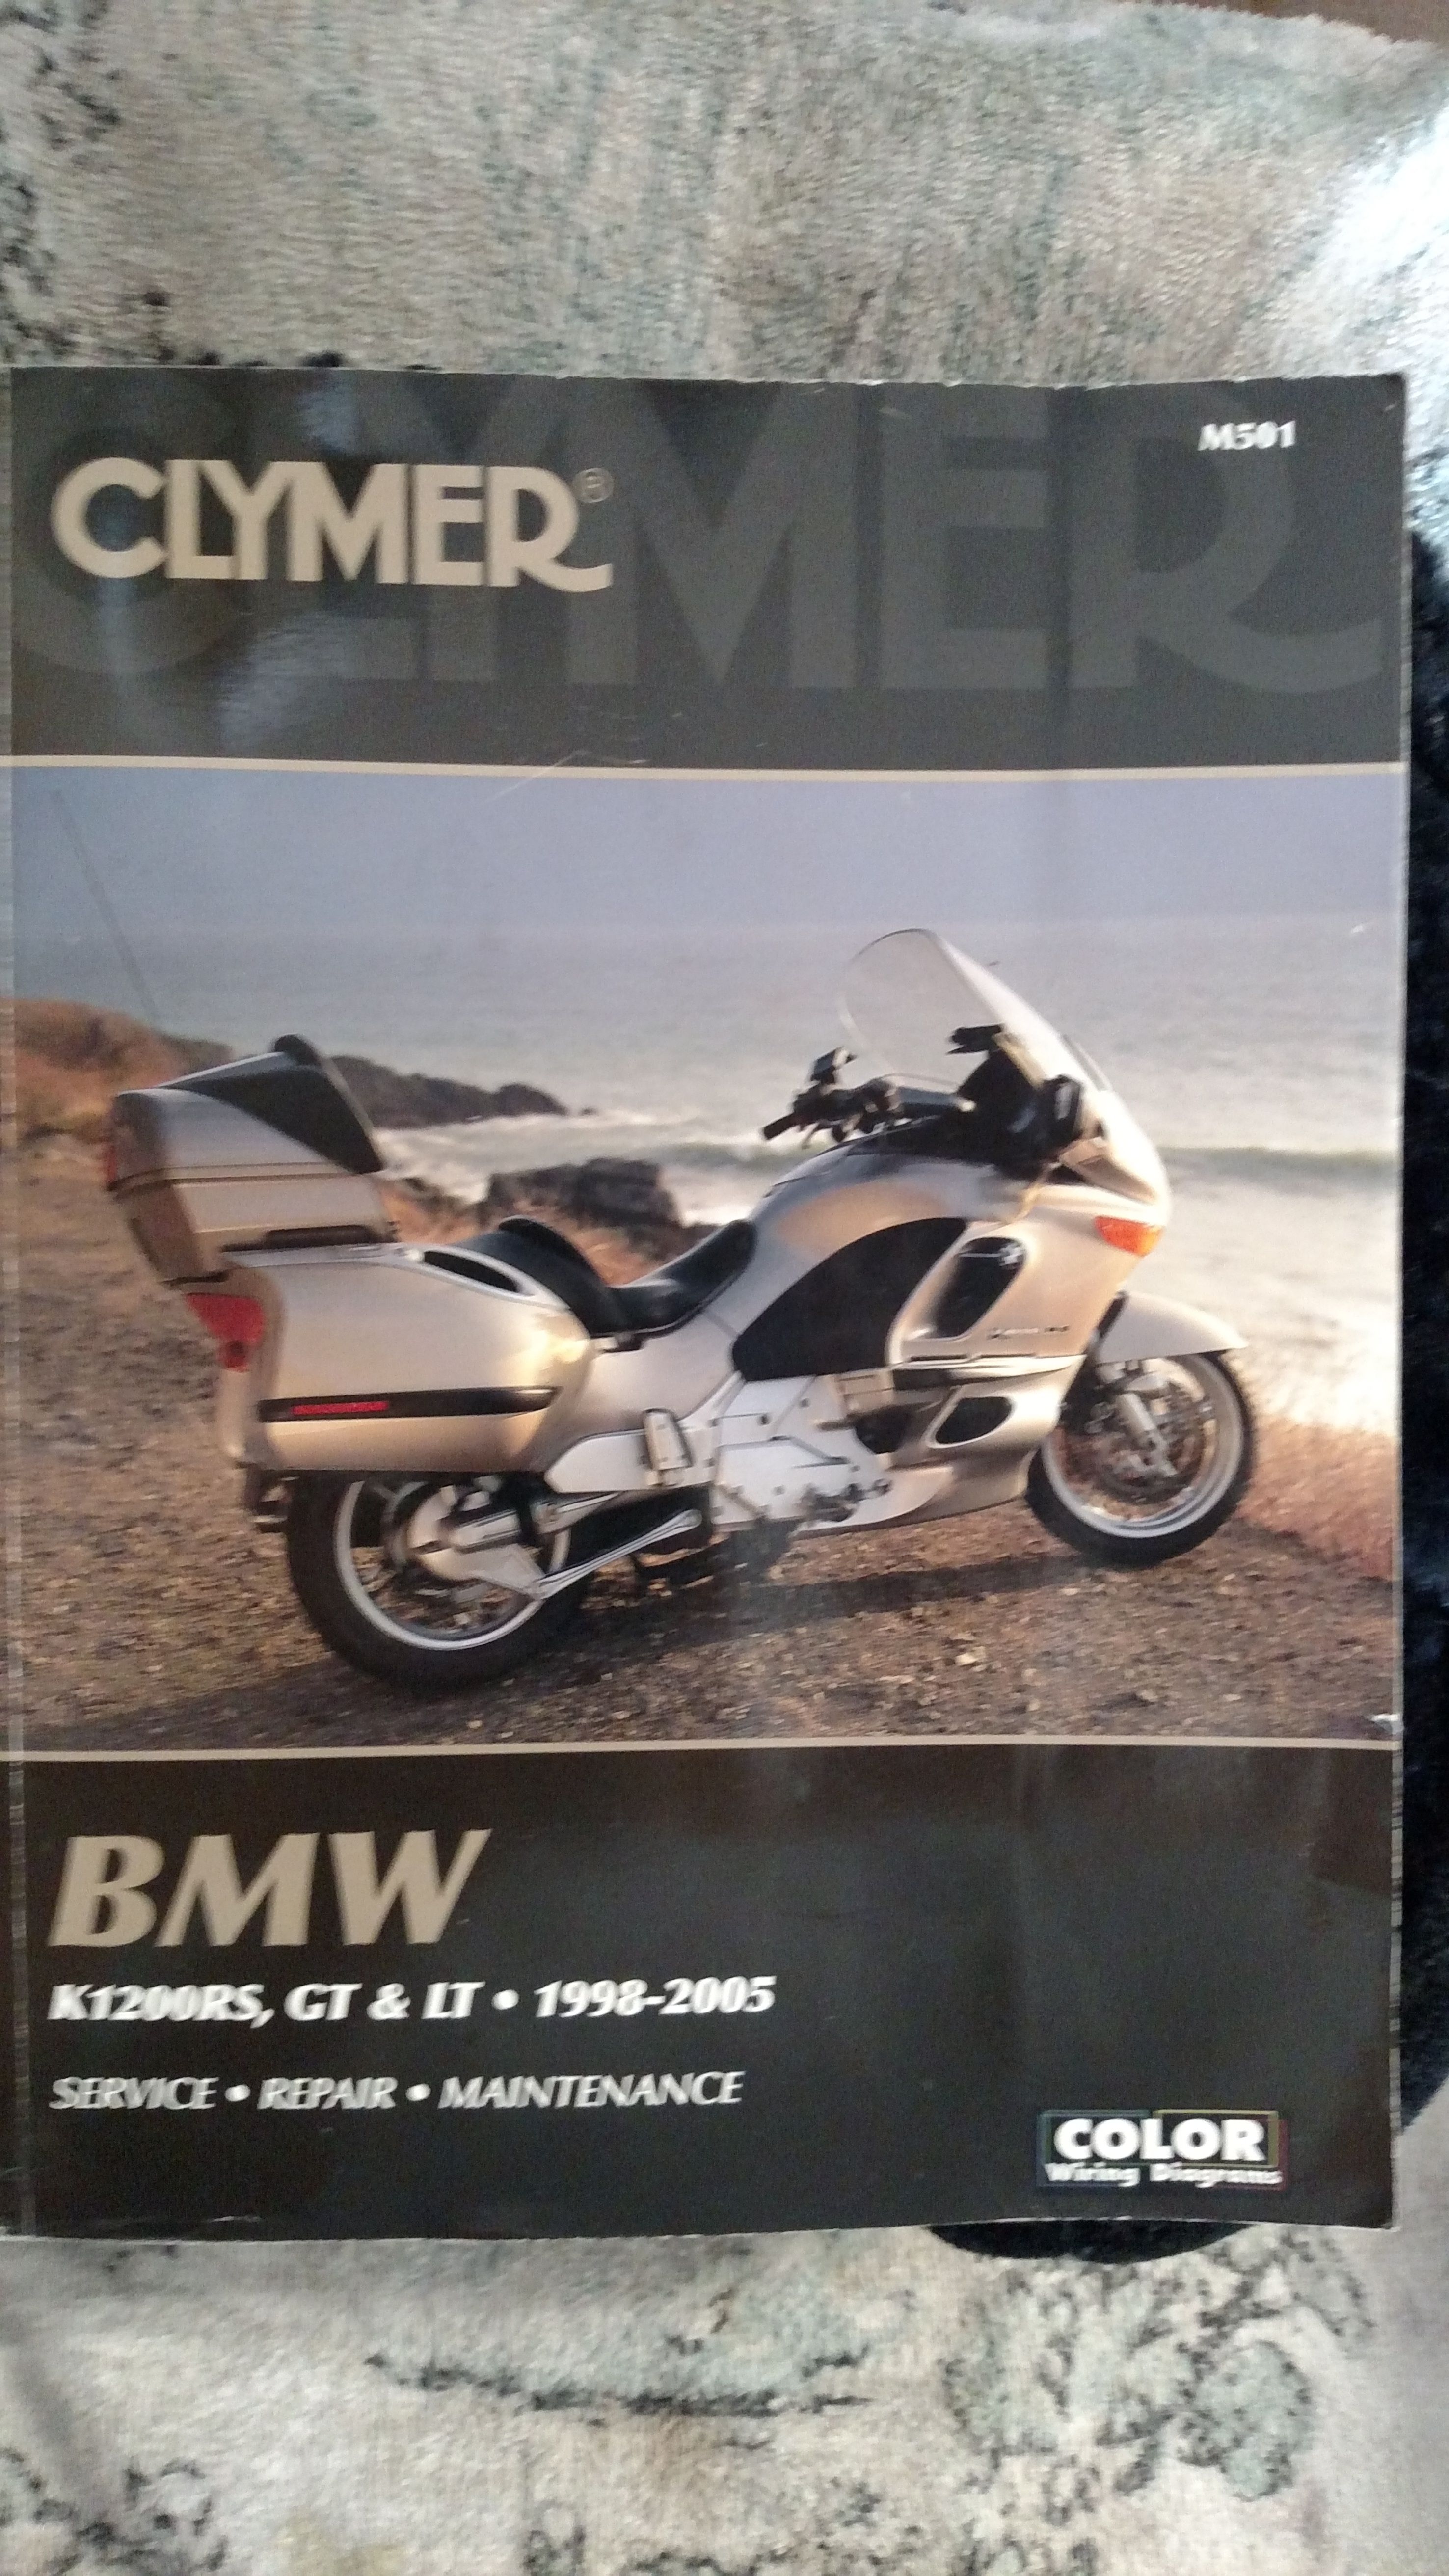 BMW motorcycle Manual